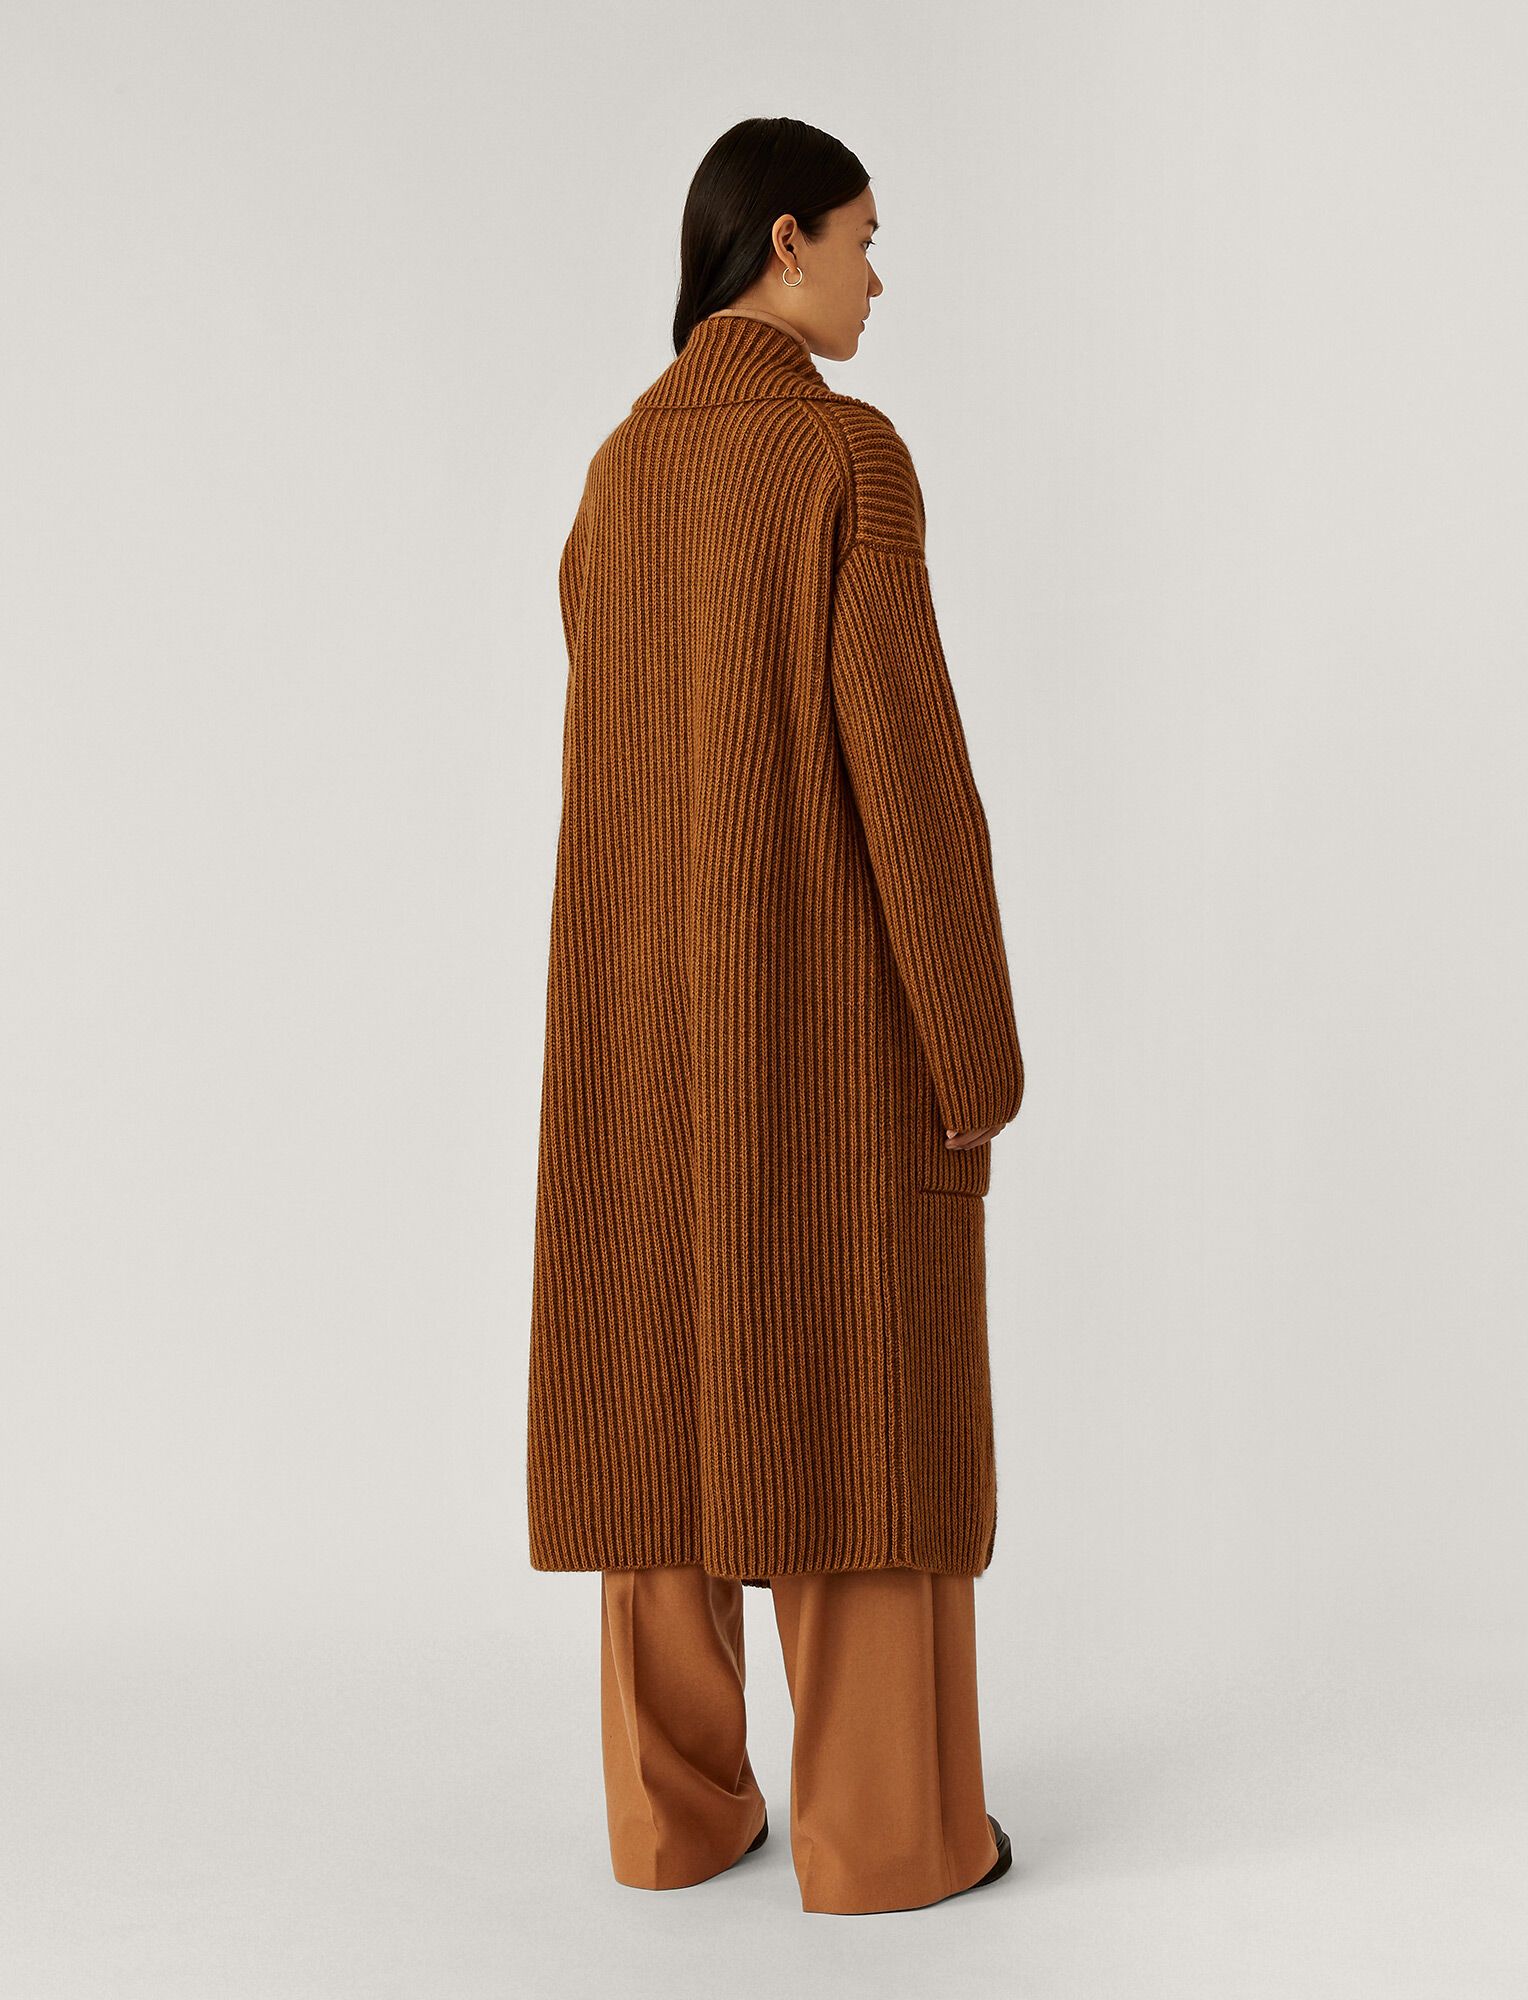 Coat Cote Anglaise Novelty Knit | Joseph